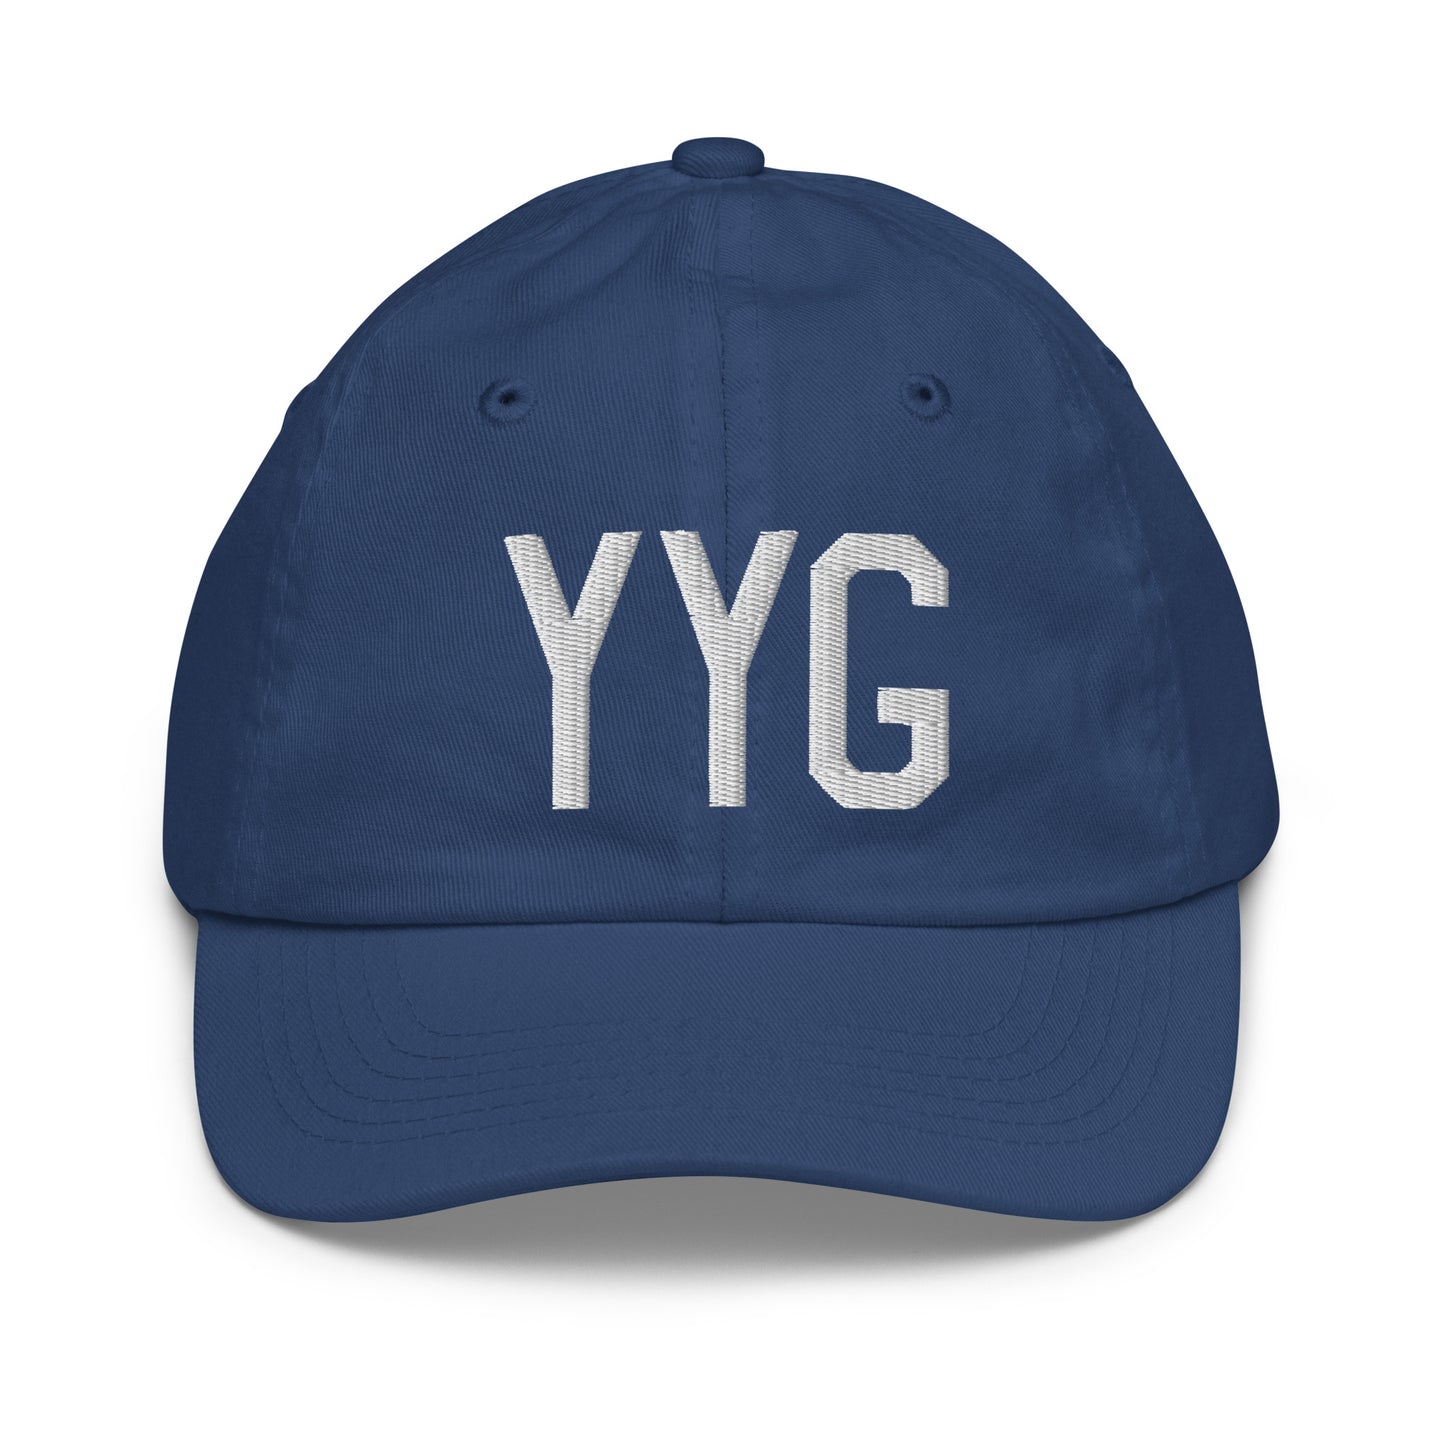 Airport Code Kid's Baseball Cap - White • YYG Charlottetown • YHM Designs - Image 20